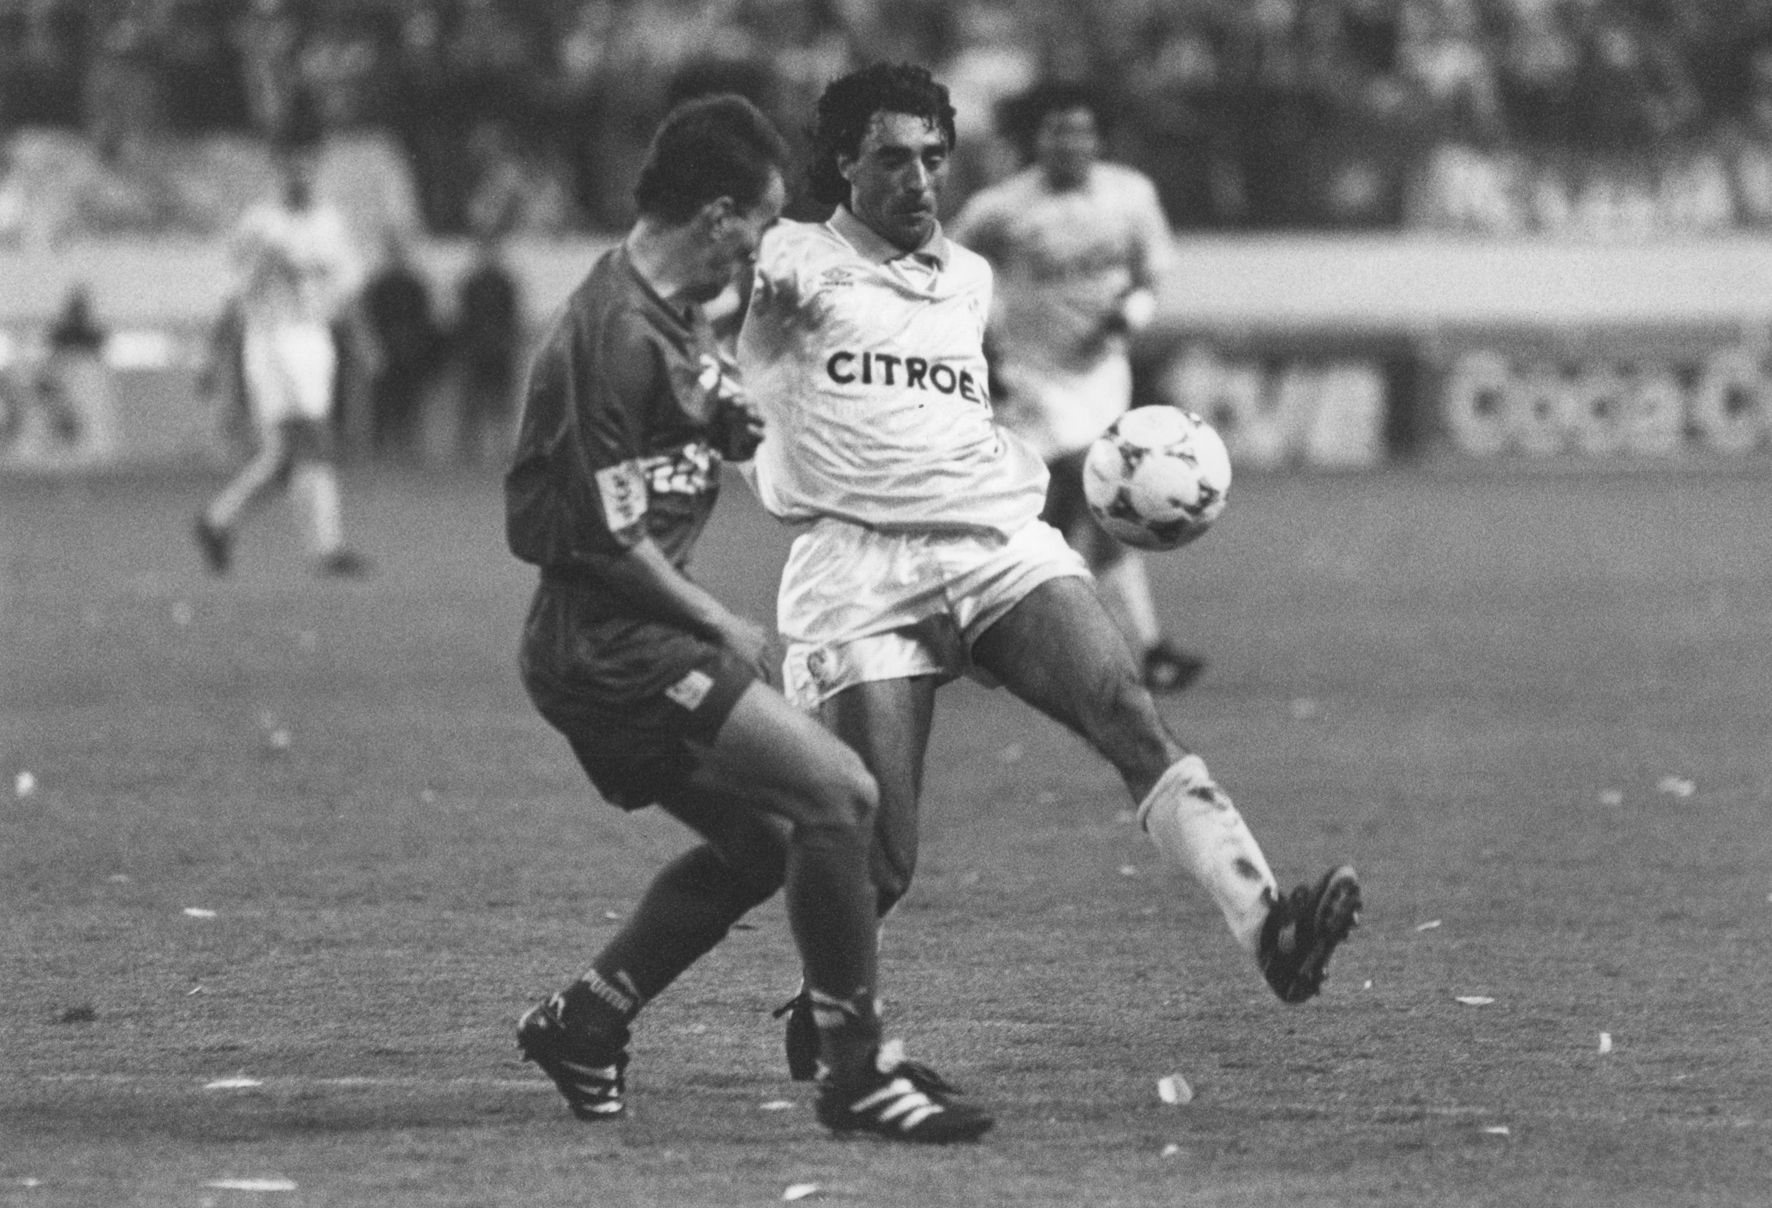 GIL 20-04-94 Flaco Gil durante la final de Copa contra el Zaragoza, en la que entr� en la segunda parte y anot� su penalti.jpg